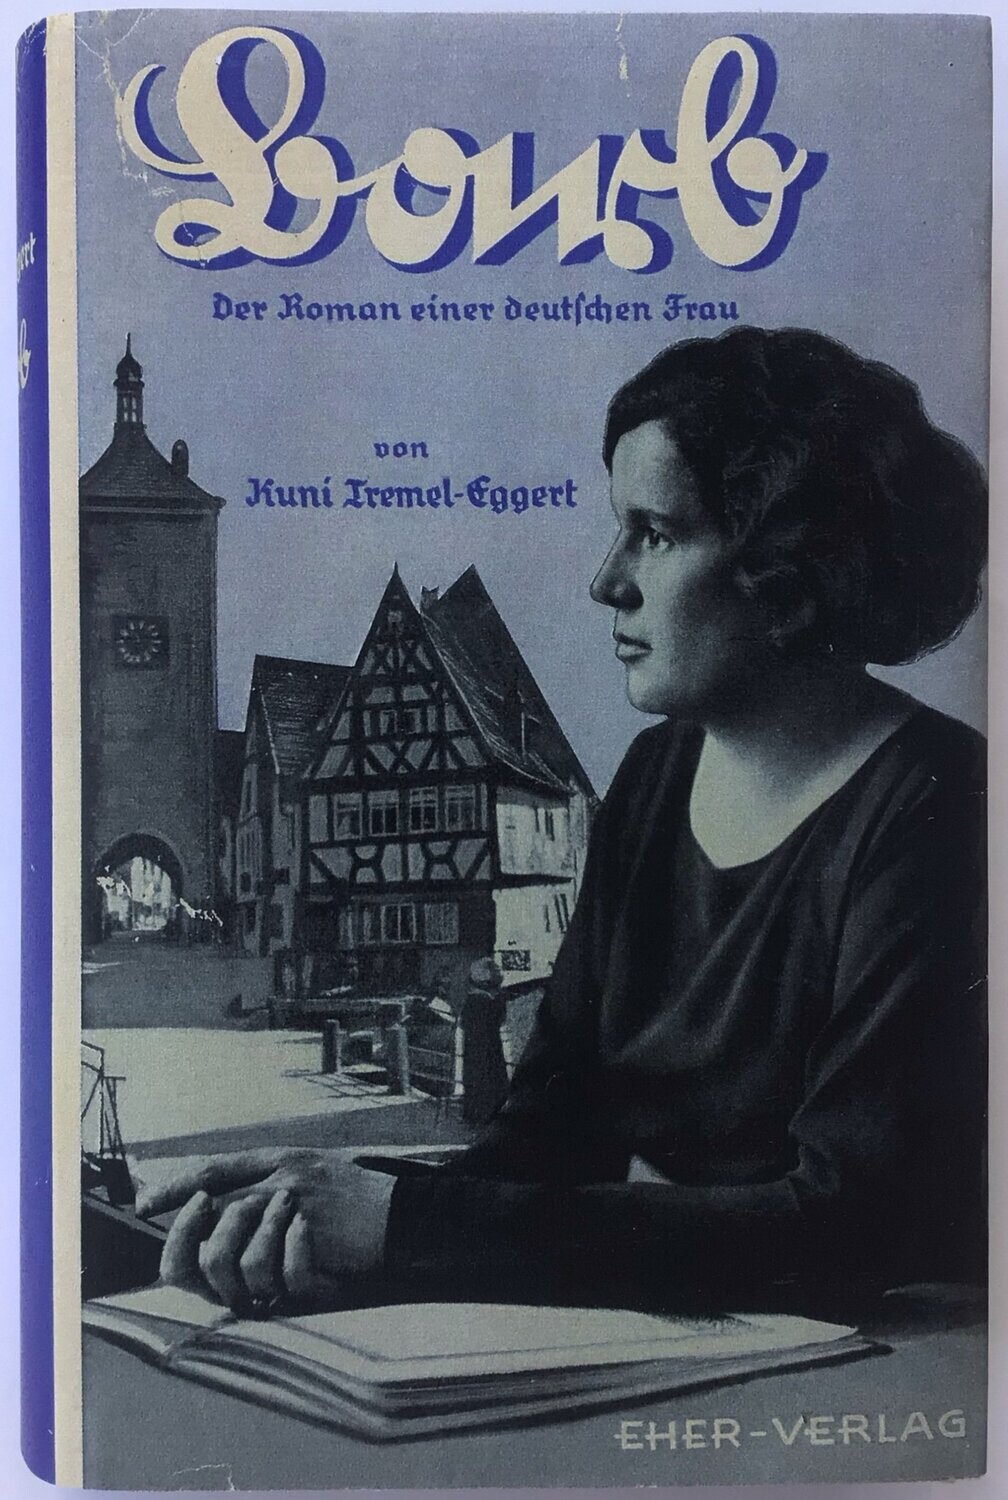 Tremel-Eggert: Barb - Der Roman einer deutschen Frau - Ganzleinenausgabe (51. Auflage) aus dem Jahr 1941 mit Schutzumschlag (Kopie)